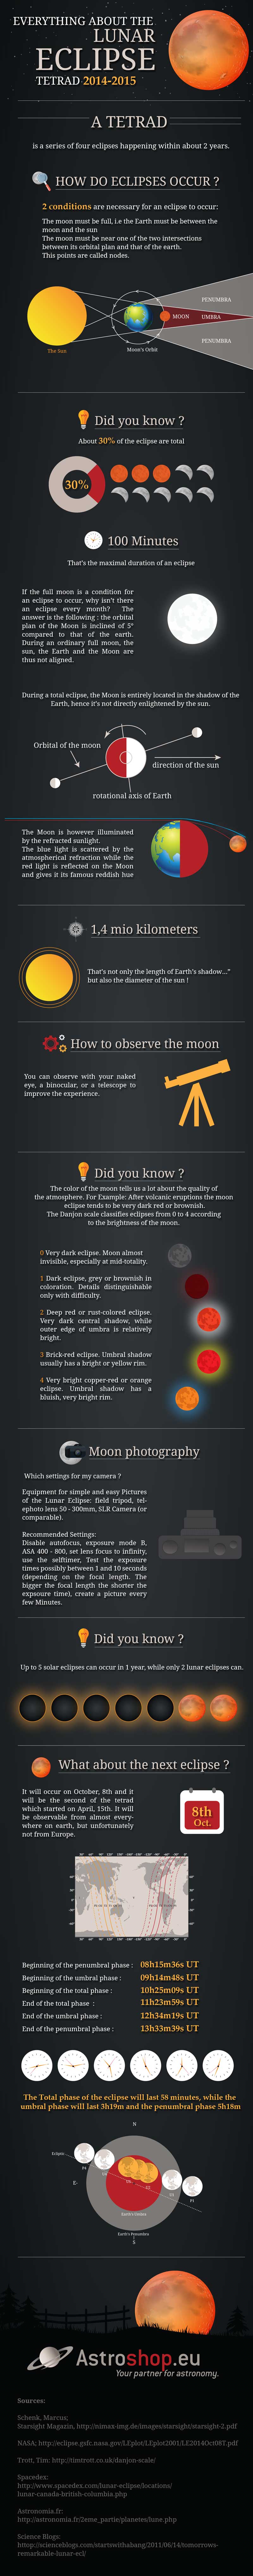 Understanding Lunar Eclipses